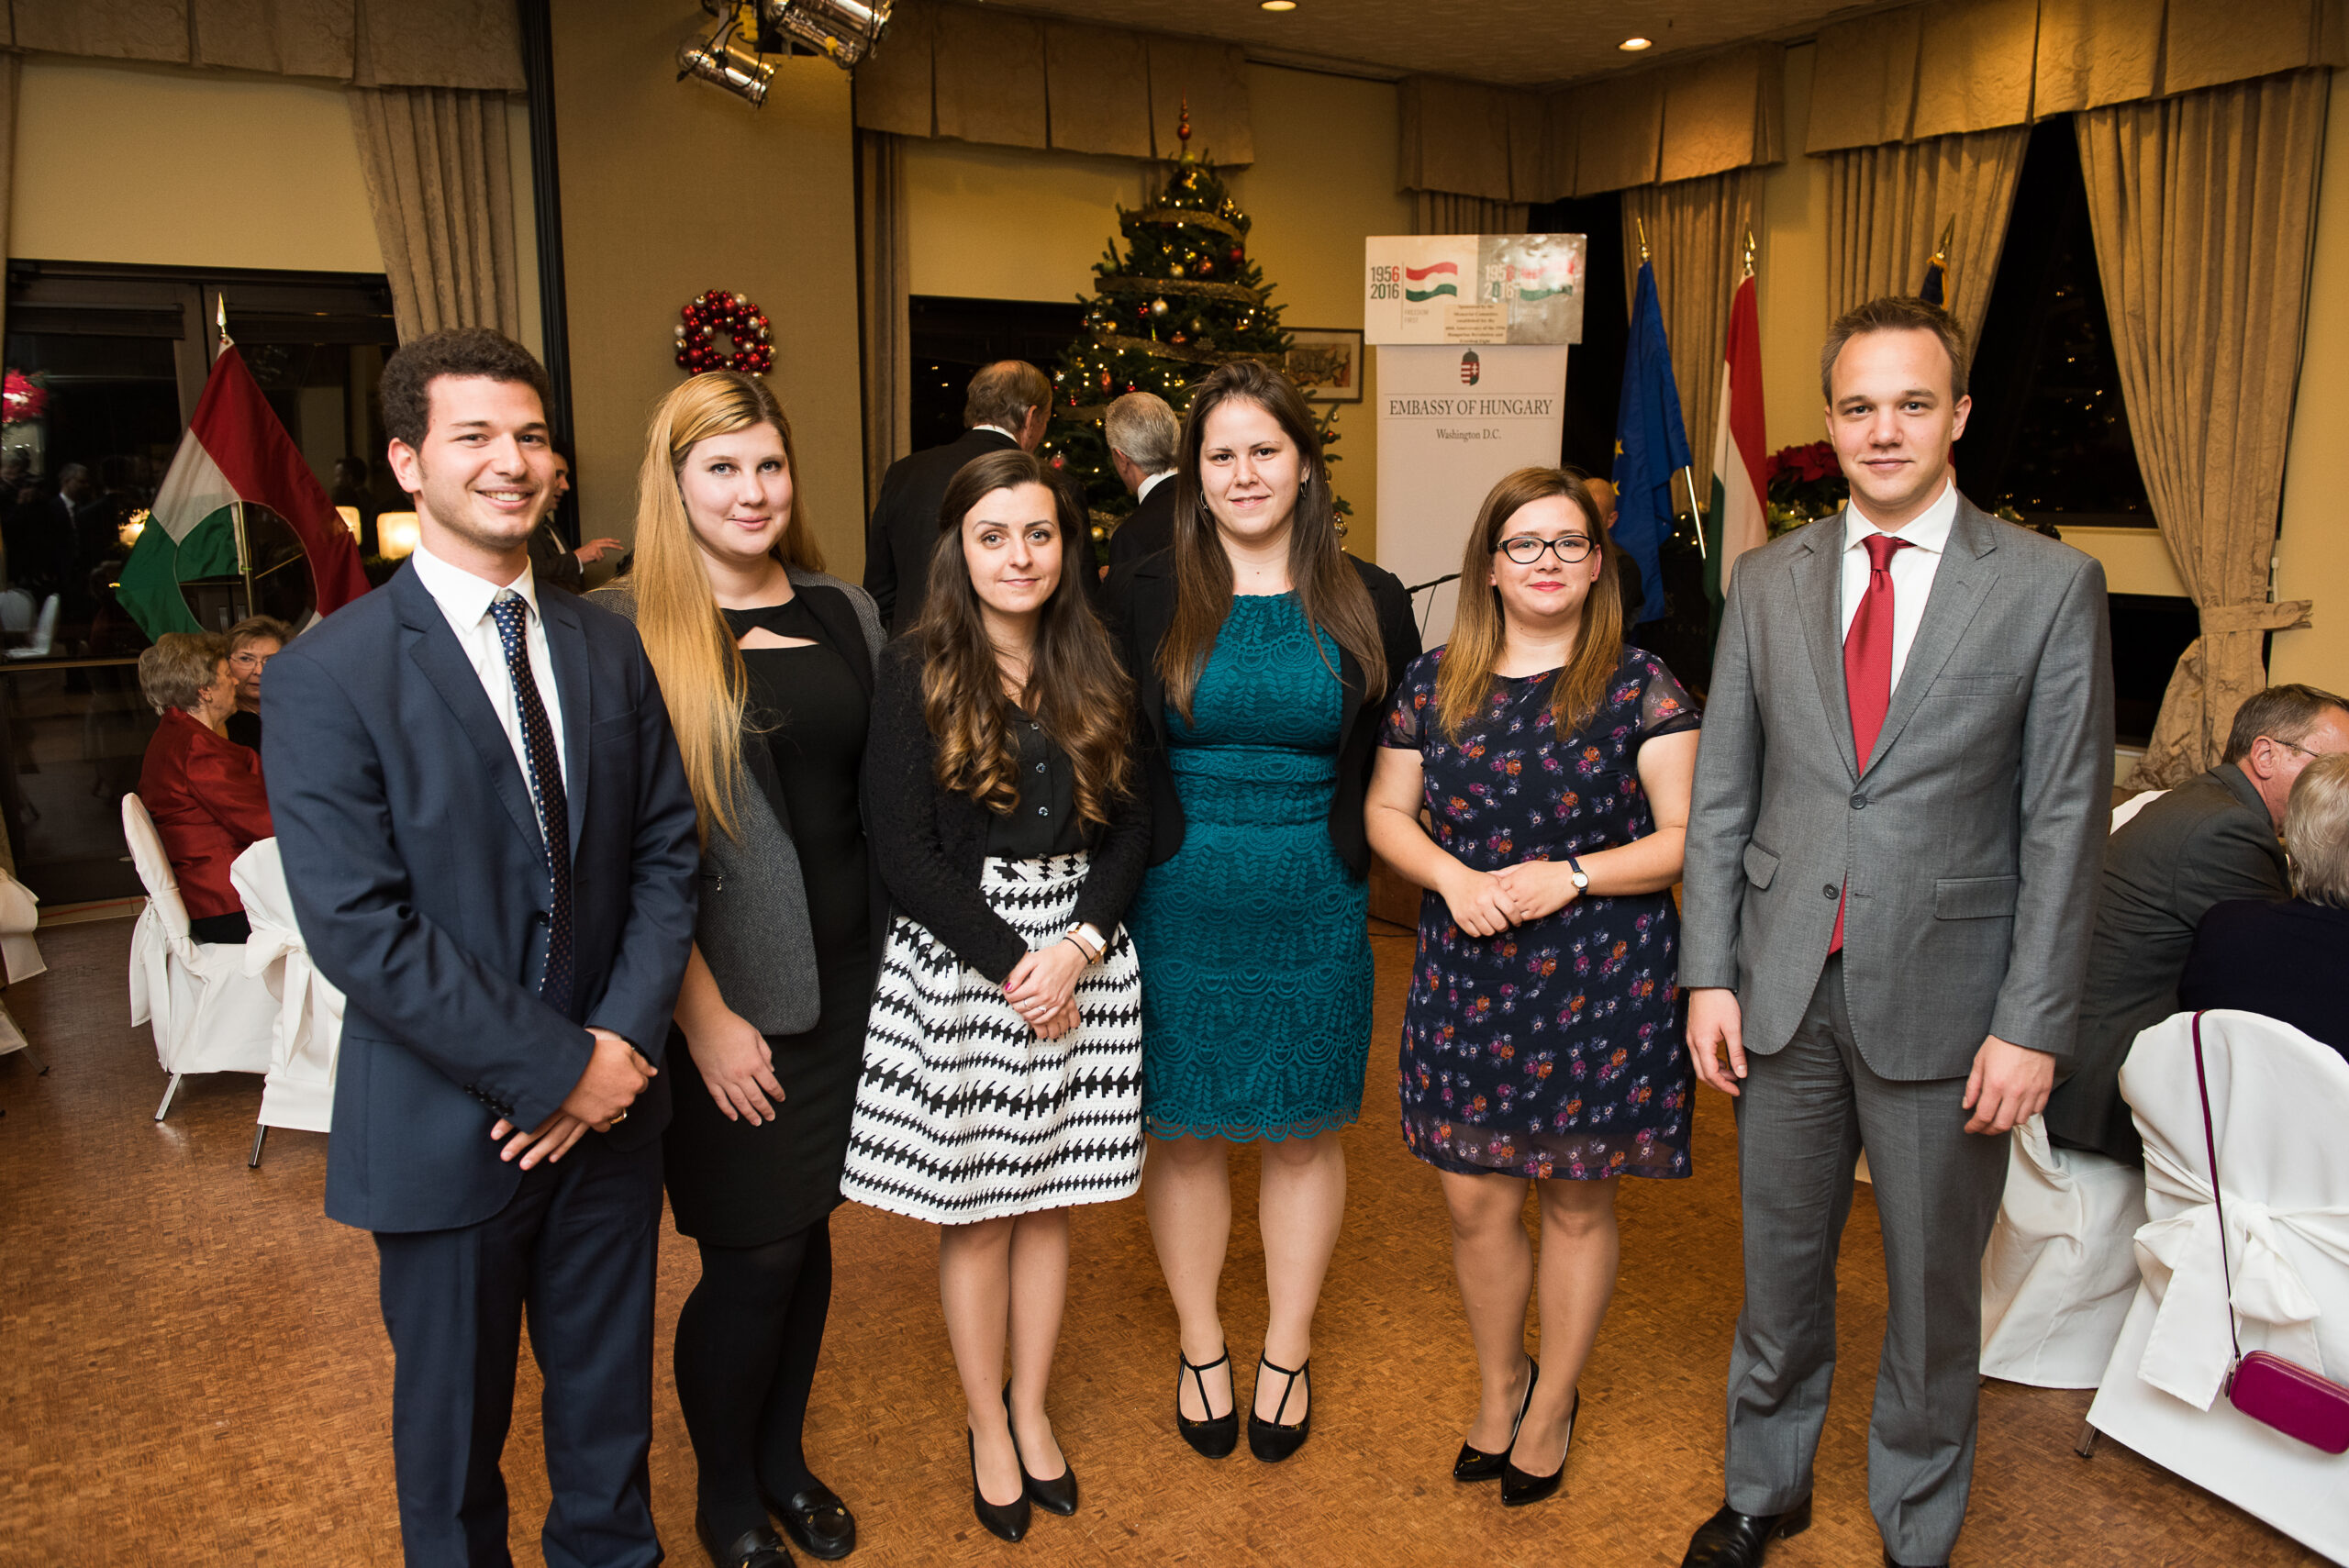 2016 Fall Coalition Interns -Mr. Tamás Forrai, Ms. Dorottya Bobák, Ms. Mária Béres, Ms. Alexandra Tari, Ms. Sarolta Borzási, Mr. Áron Giró-Szász